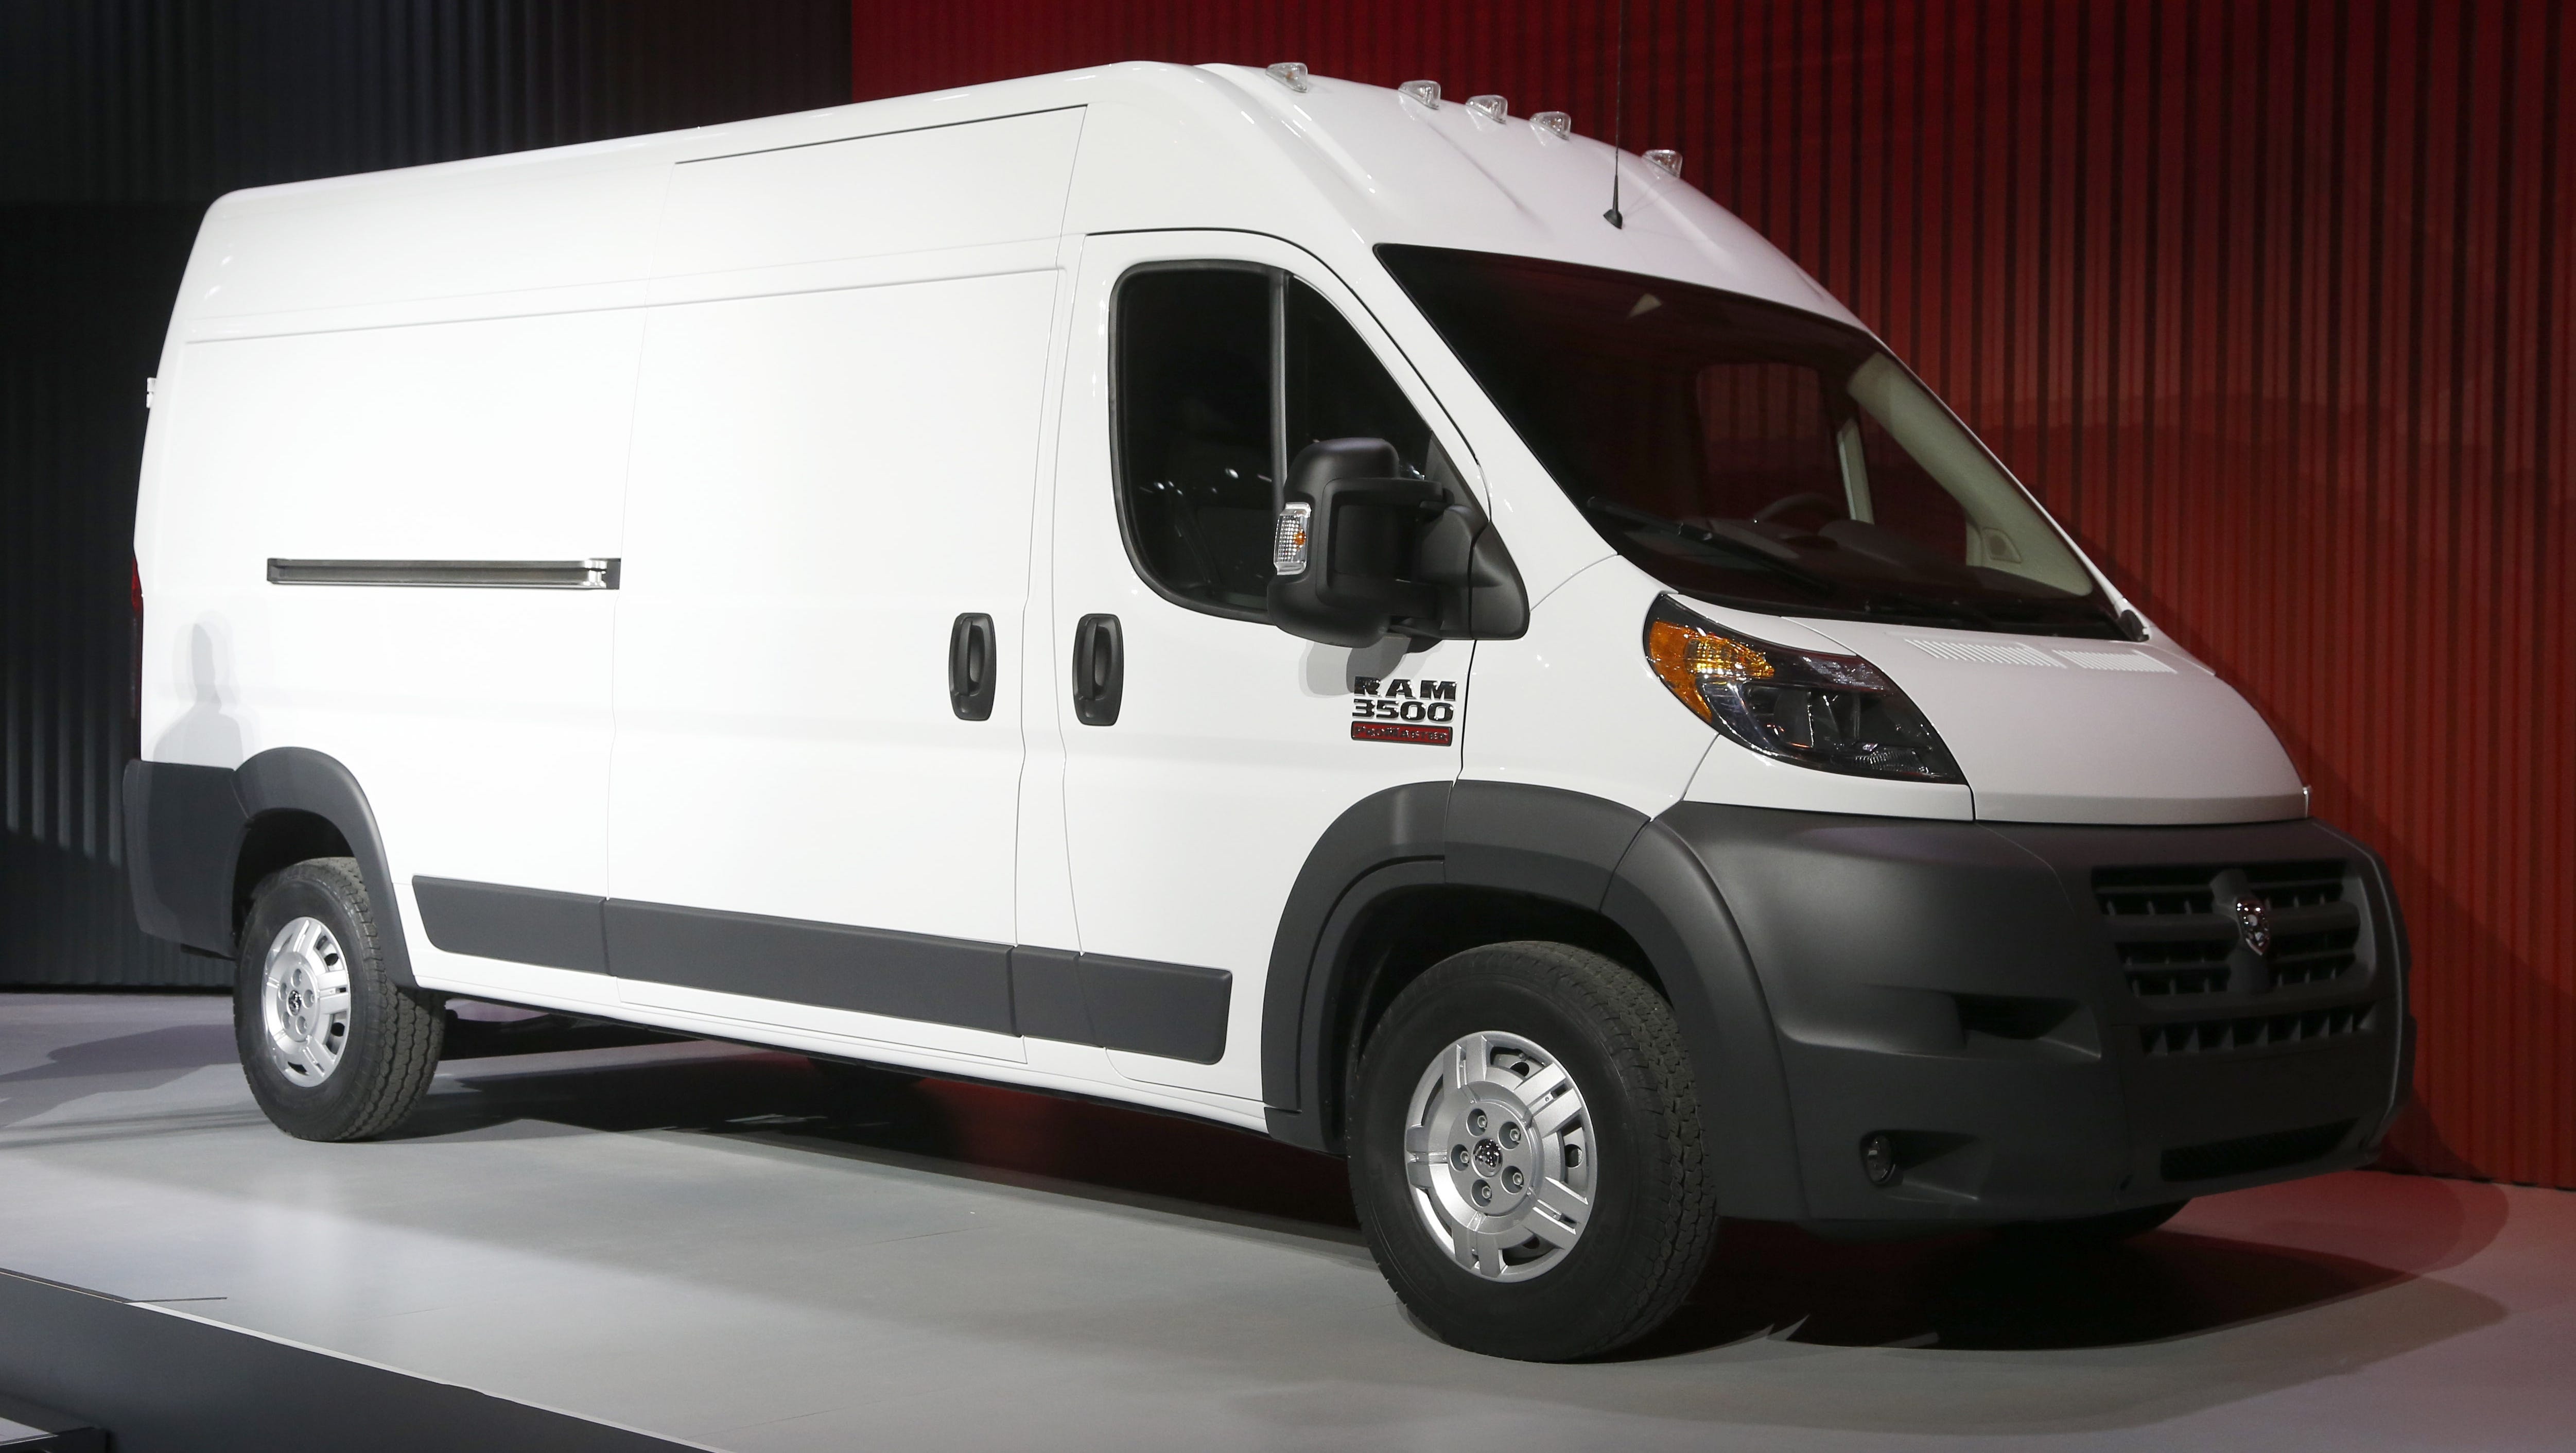 Nissan show new vans